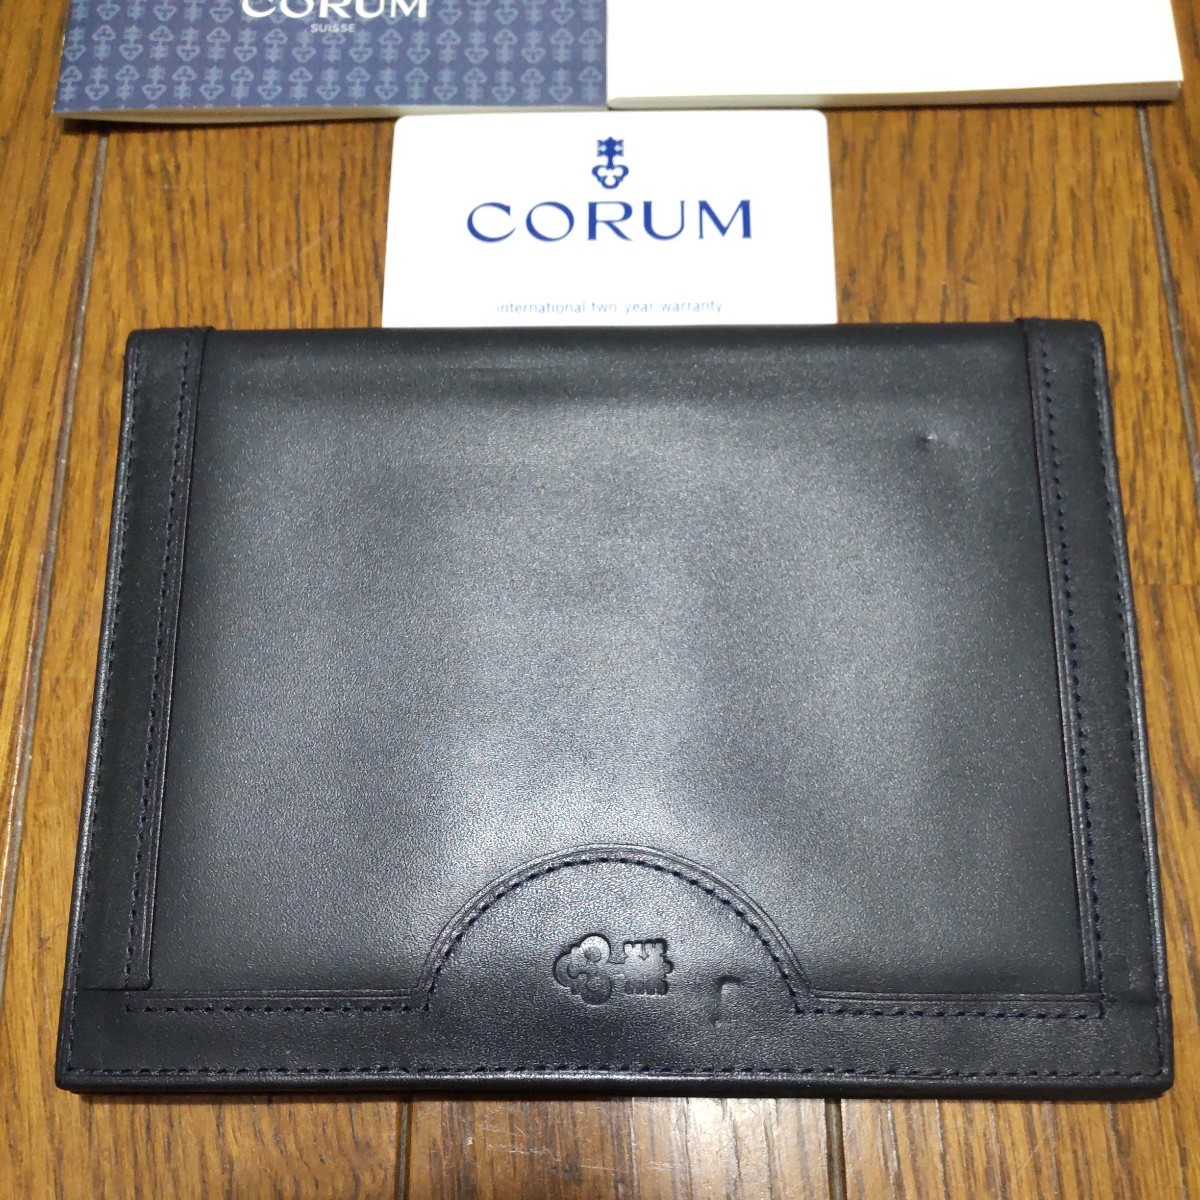 CORUM оригинальный Corum стандартный гарантия брошюра гарантия - незаполненный международный письменная гарантия гарантия специальный чехол редкость редкий 